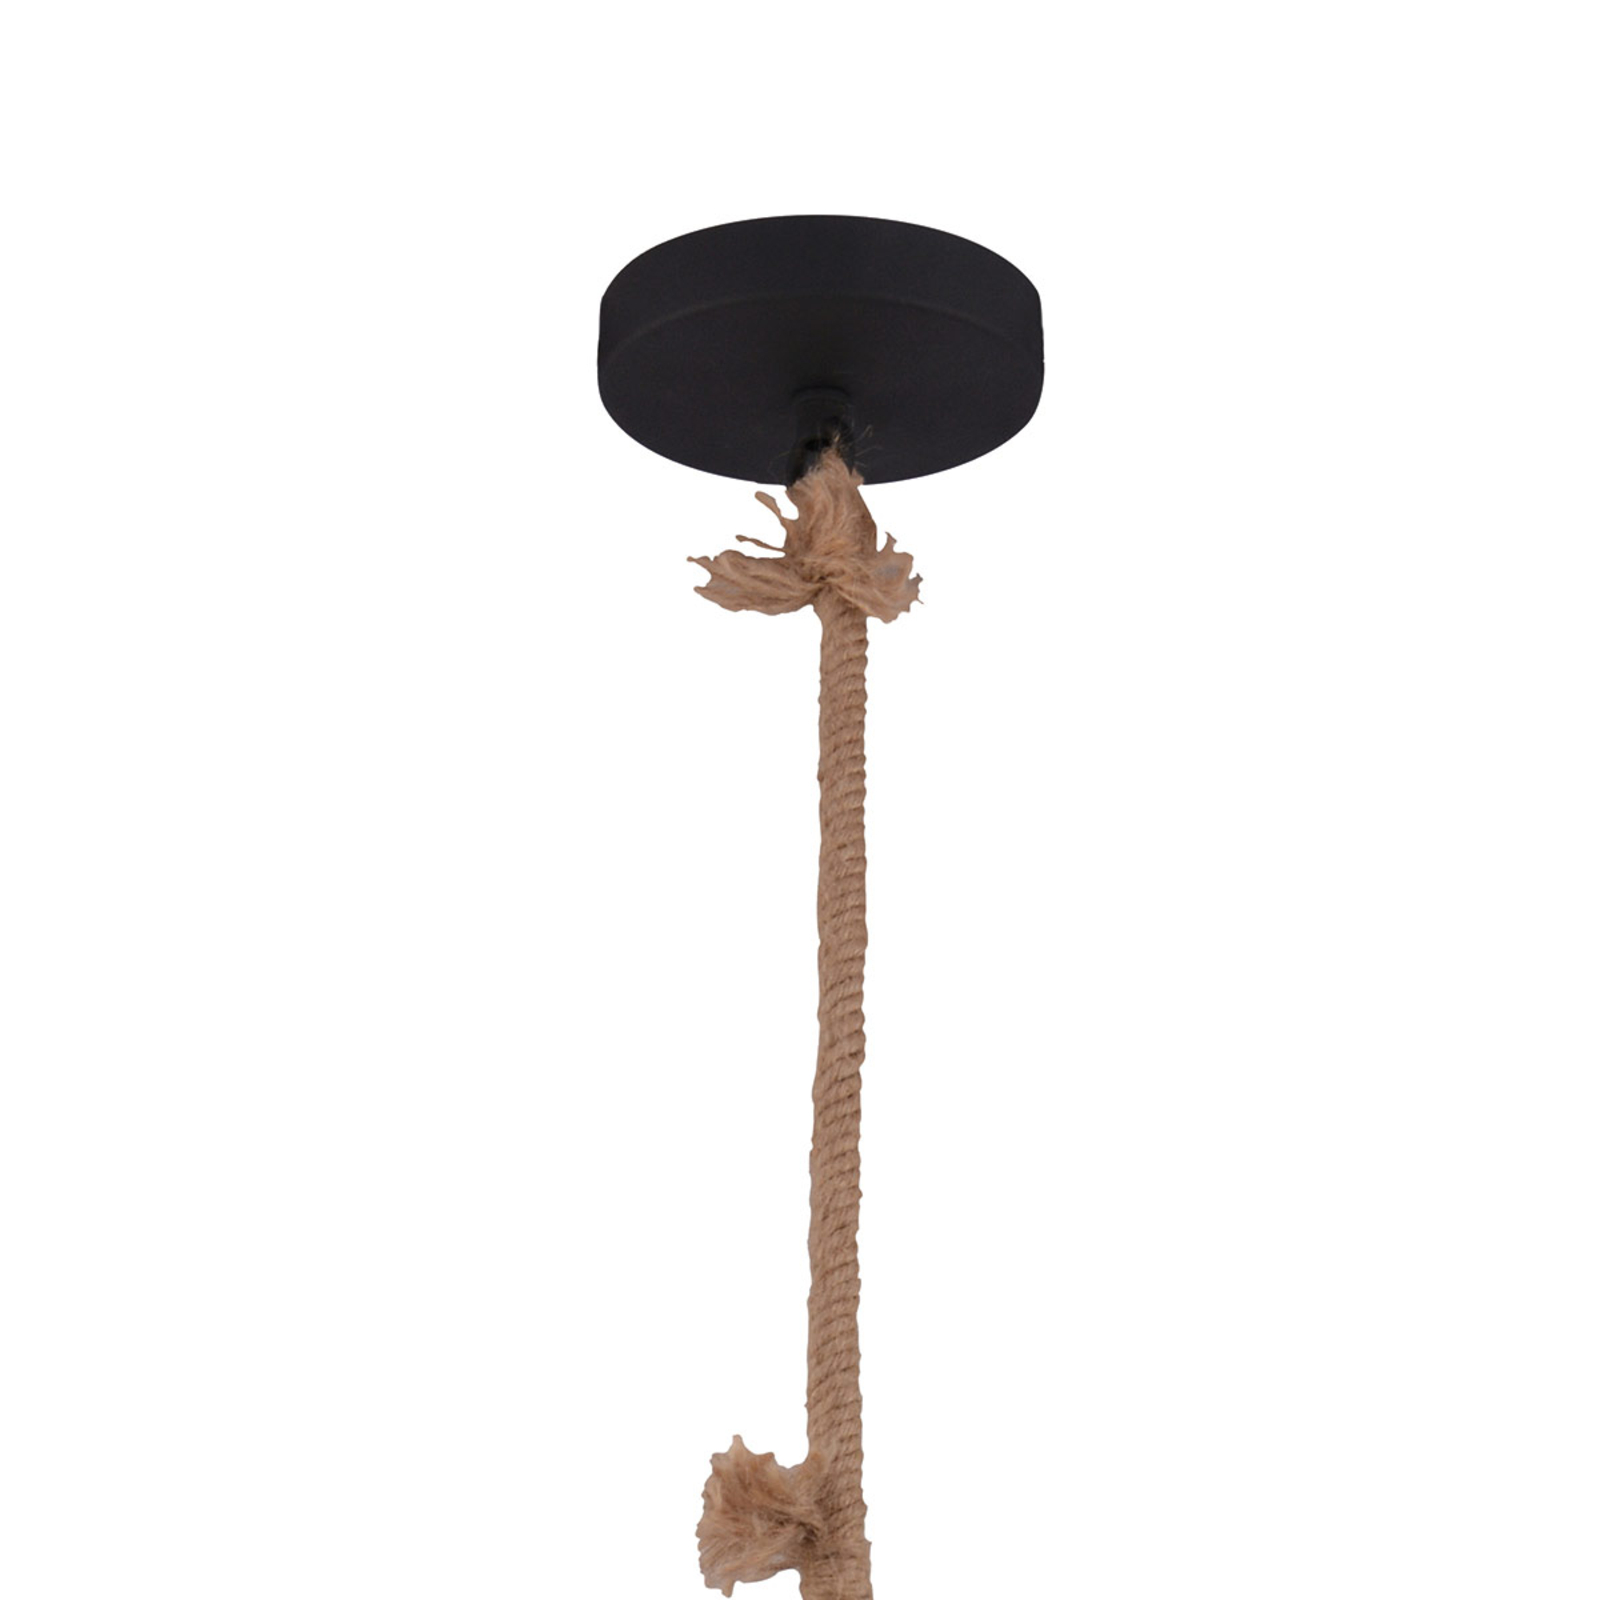 Hanglamp in industrieel ontwerp, zwart